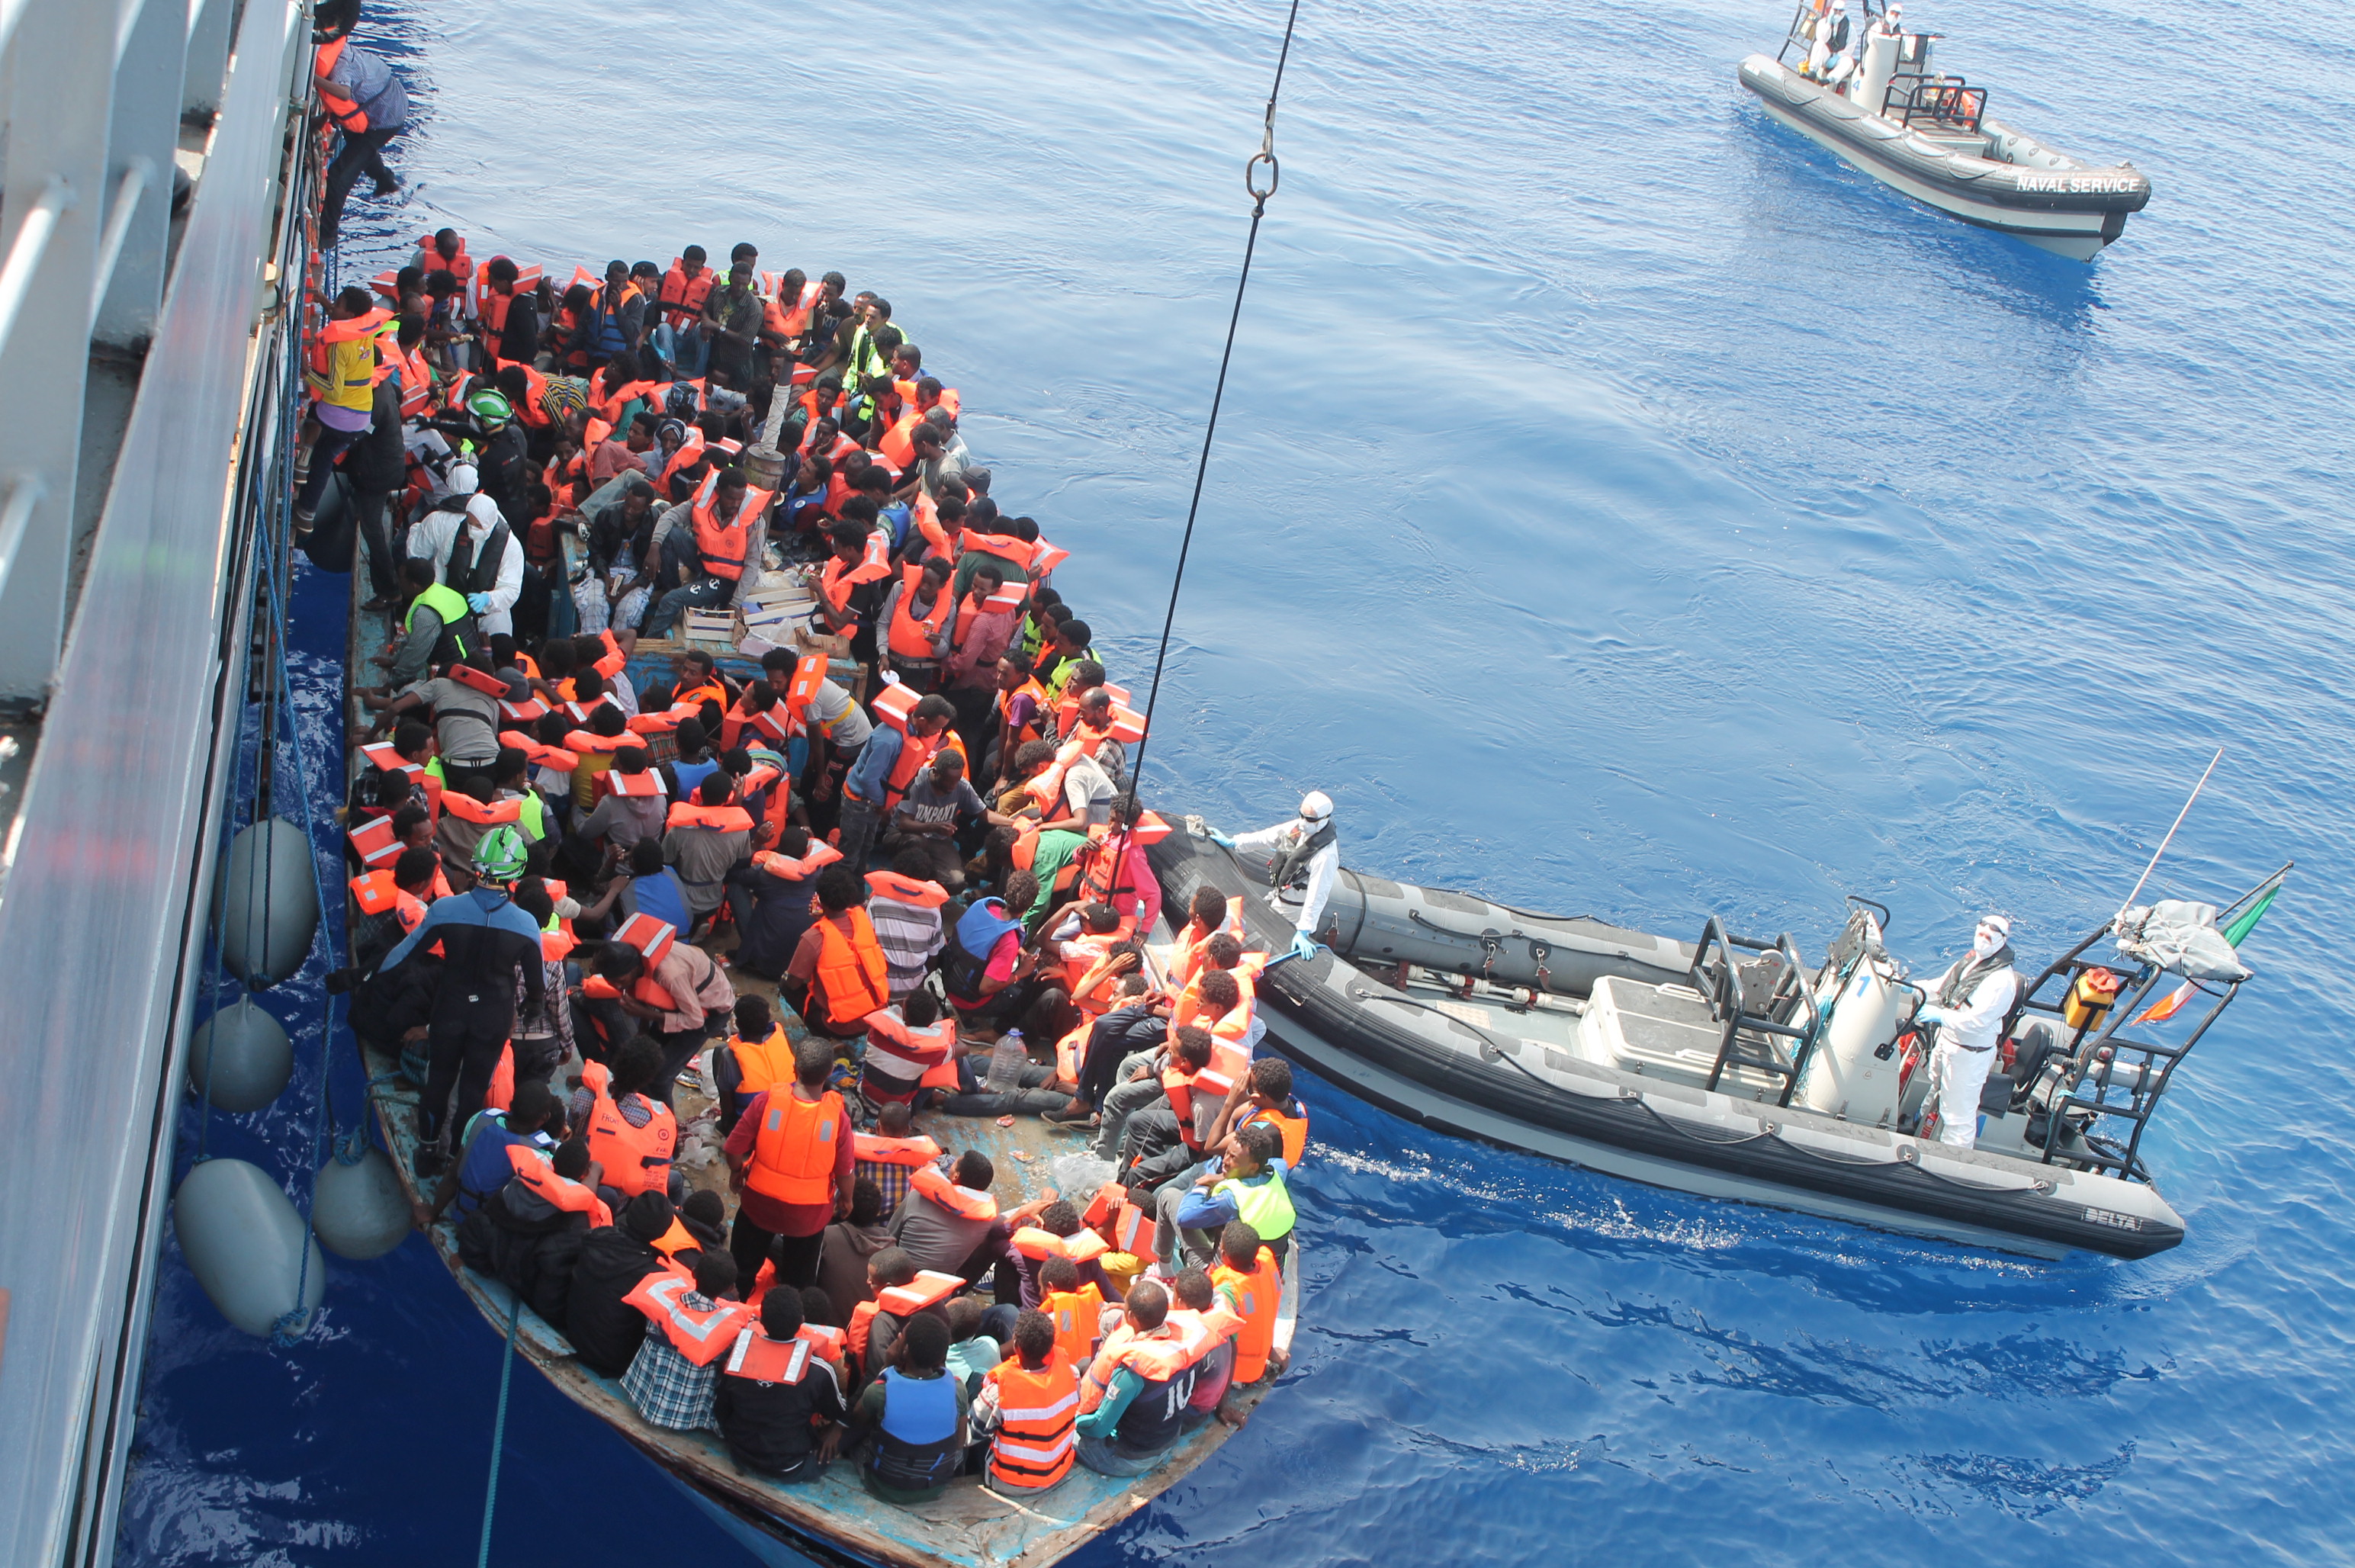 Globalizzazione, guerre, migrazioni. 3 ottobre 2013: il naufragio di Lampedusa